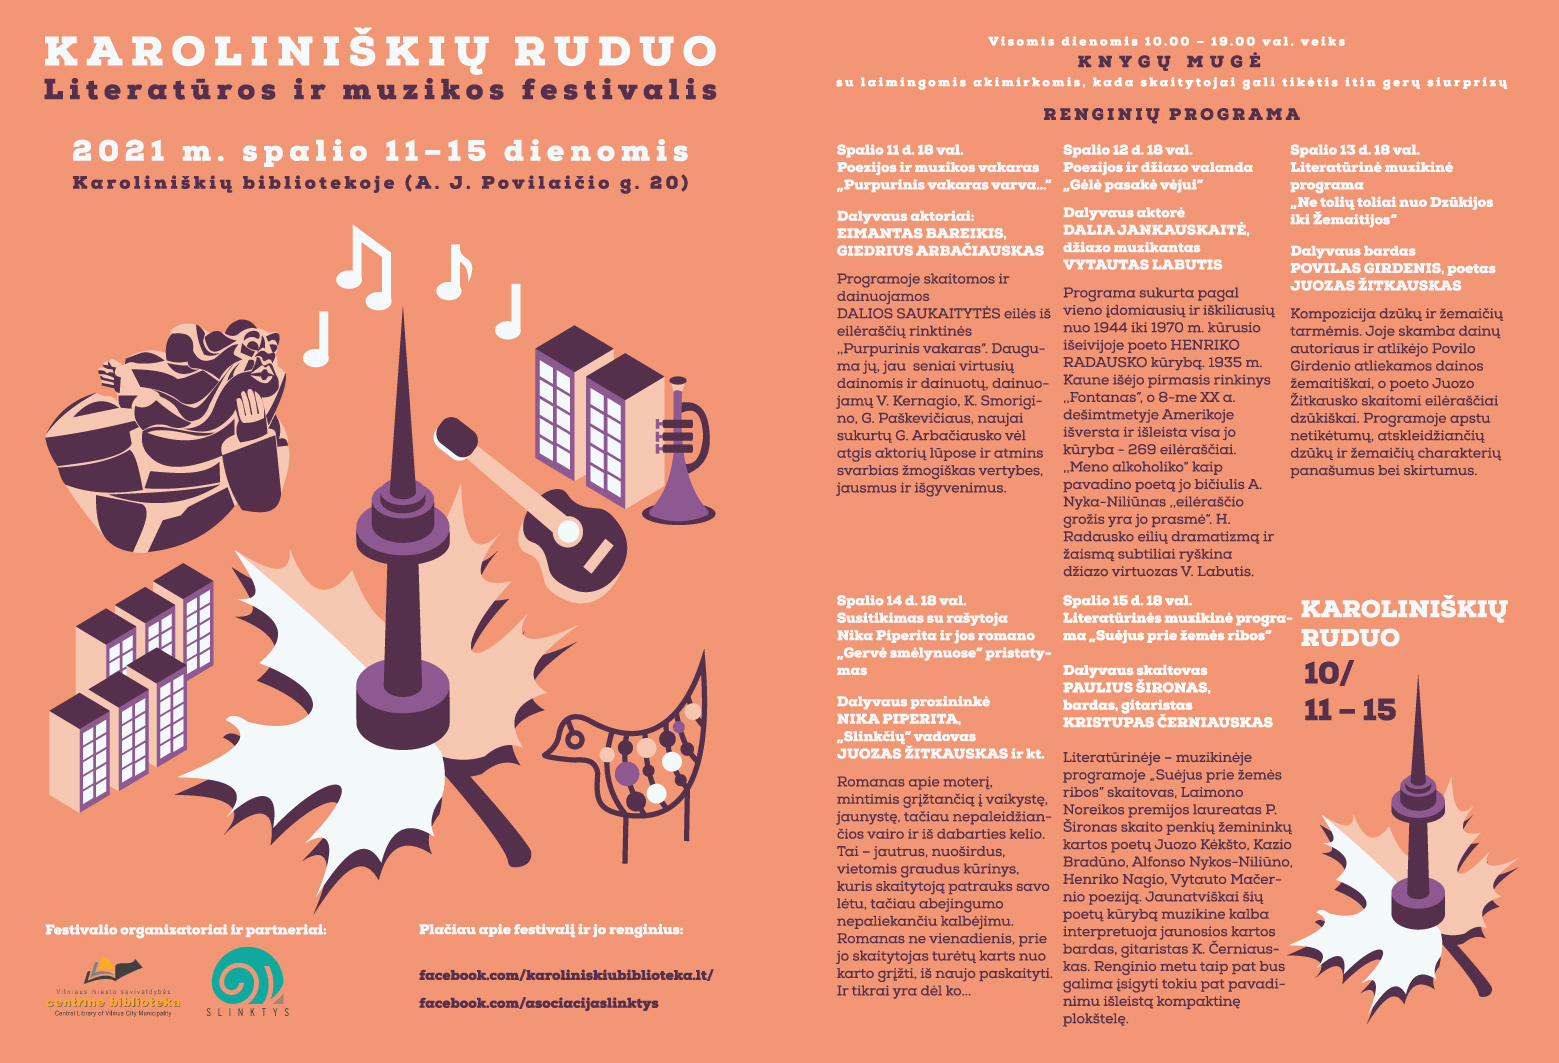 2021 m. spalio 11 – 15 dienomis Karoliniškių bibliotekoje organizuoja literatūros ir muzikos festivalį „Karoliniškių ruduo“! 2021 10 04 karoliniskiu ruduo